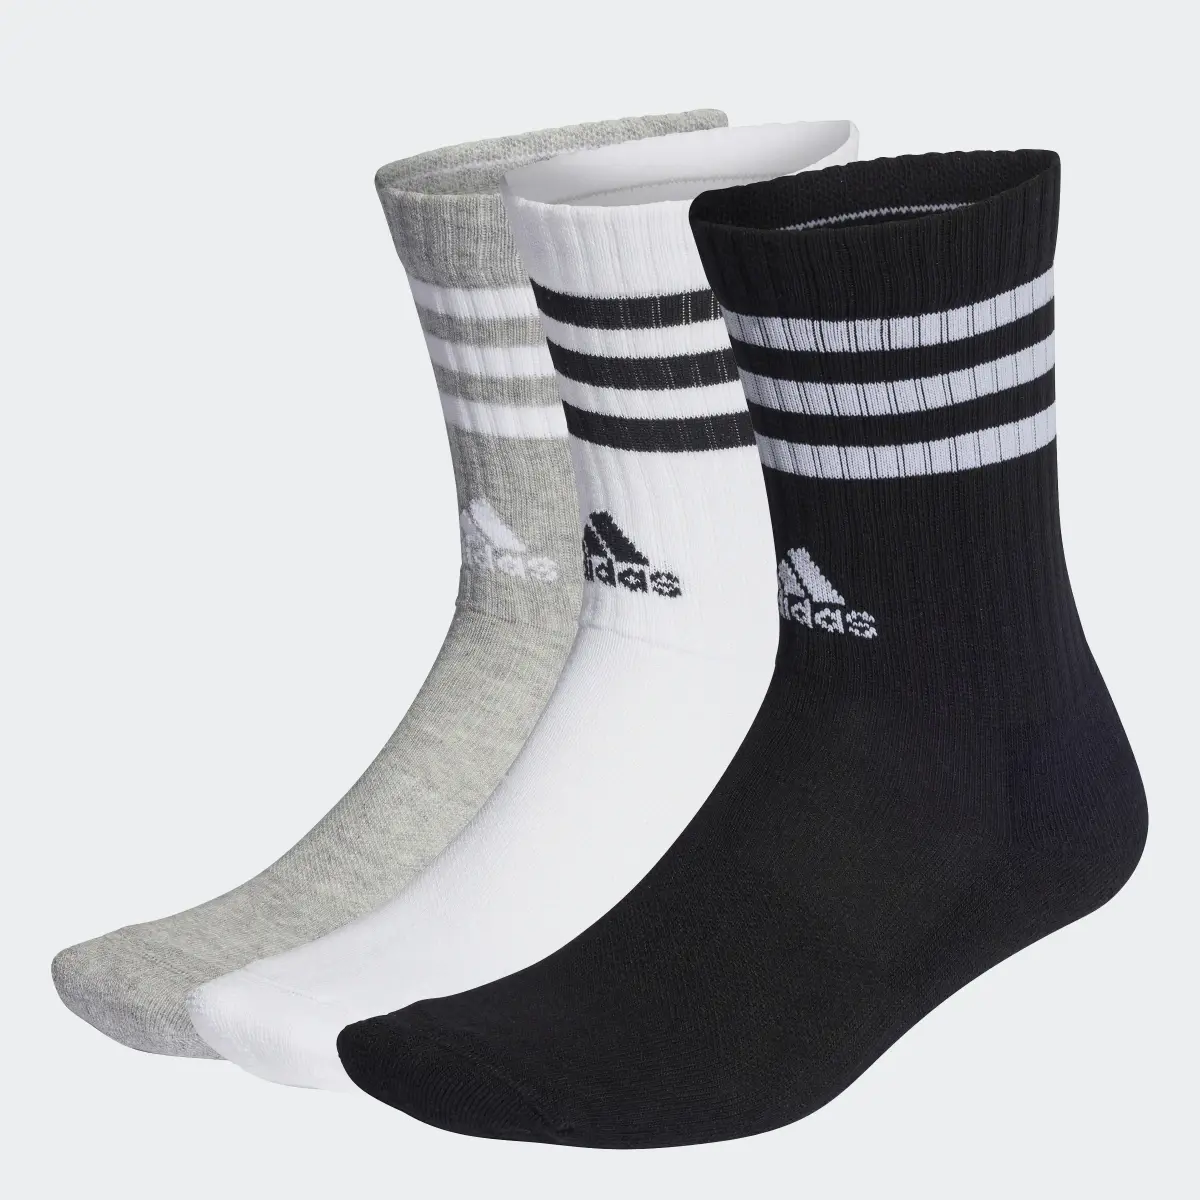 Adidas Meias de Cano Médio Acolchoadas 3-Stripes – 3 pares. 1